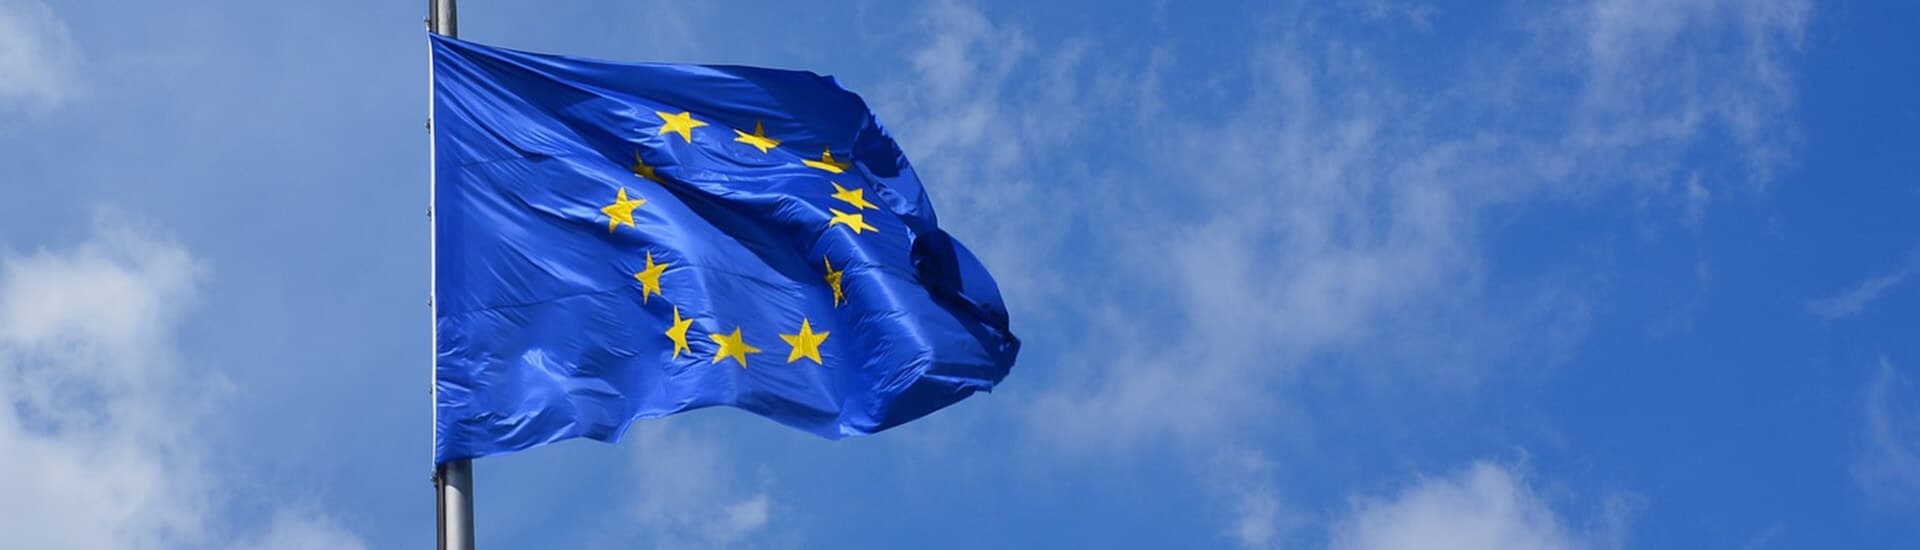 Die Europafahne weht im Wind vor einem blauen Himmel